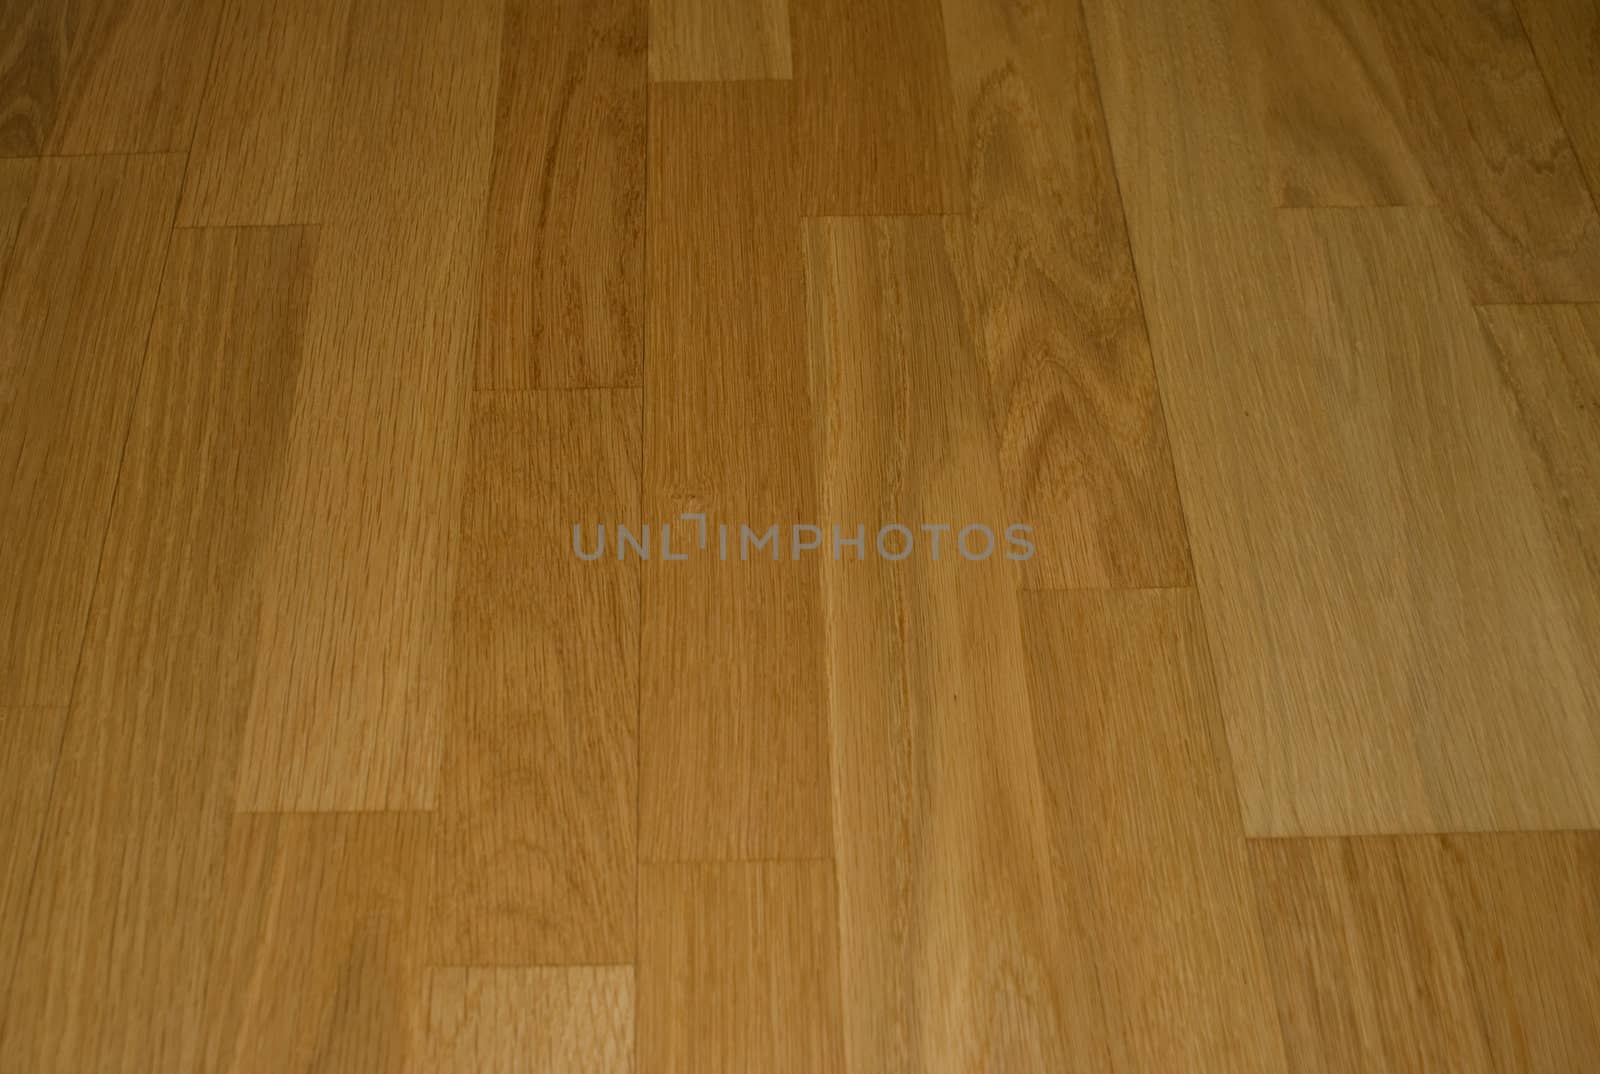 Indoor photo of a wooden floor board